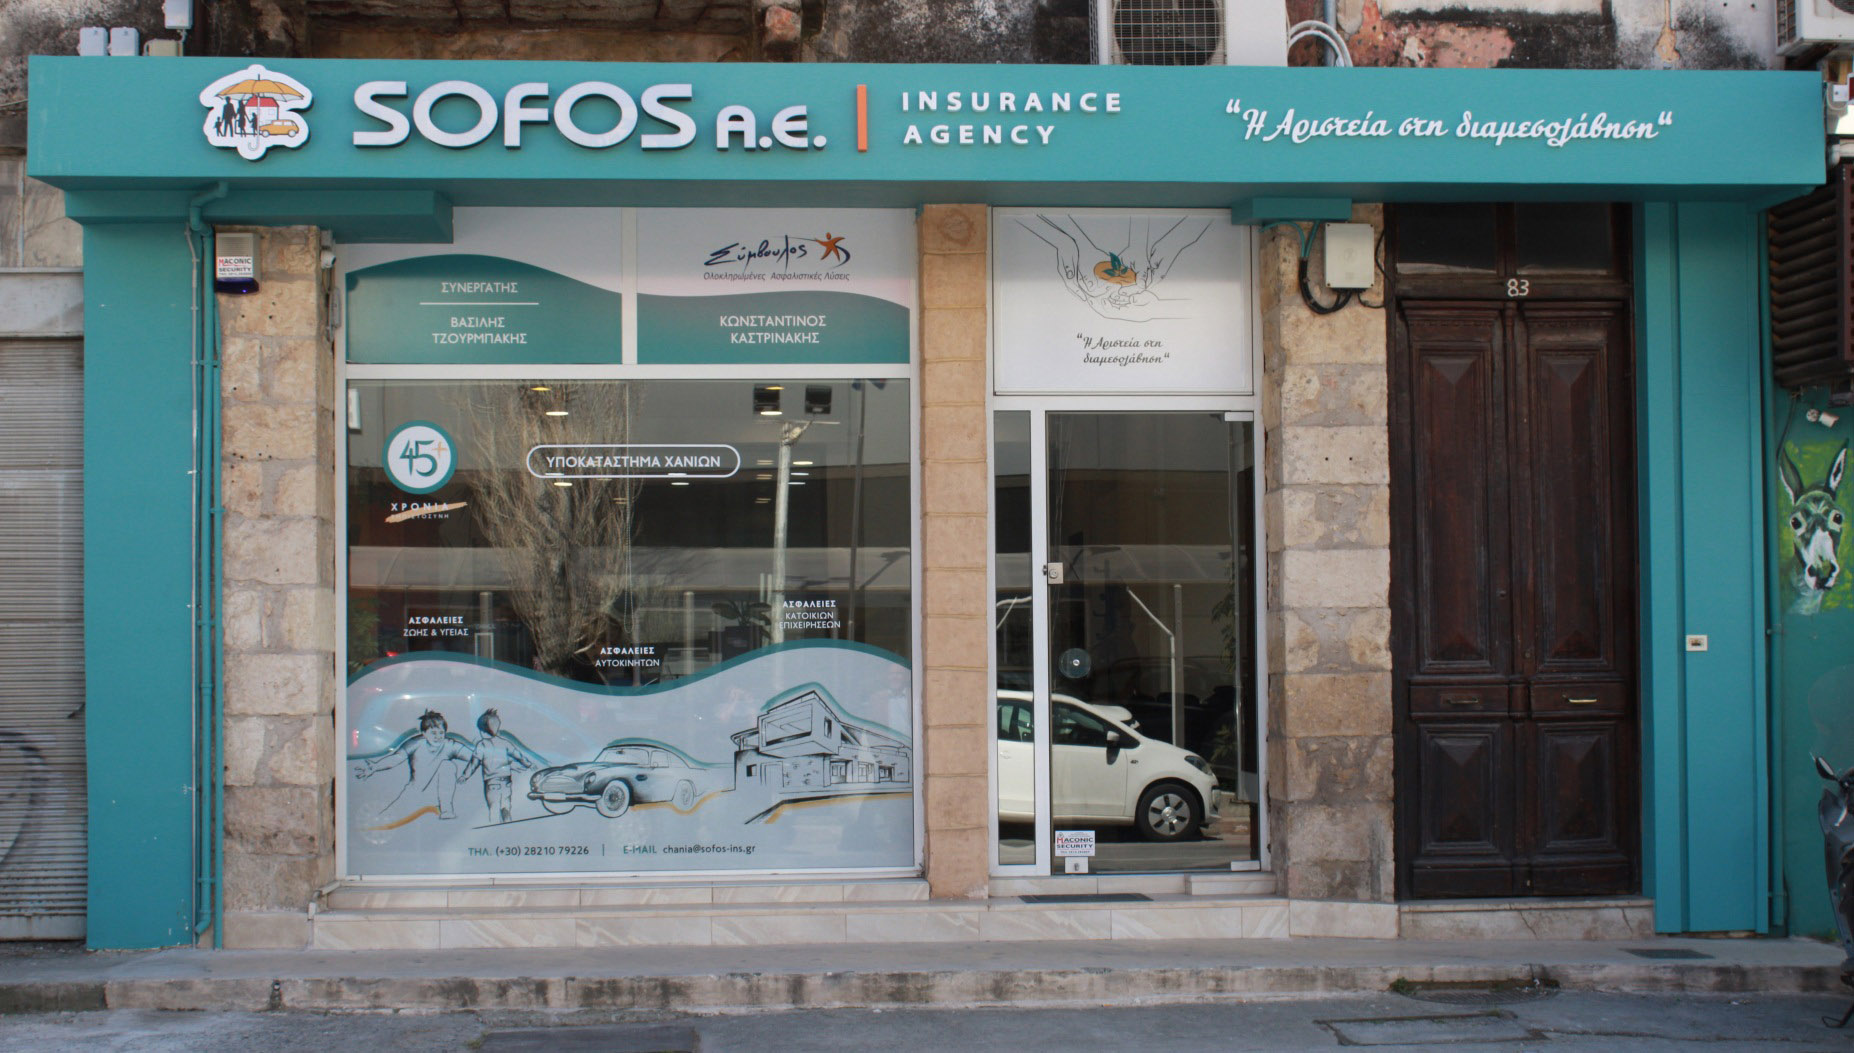 Κ. Καστρινάκης: H Sofos Insurance Agency έχει όραμα και πλάνο ανάπτυξης